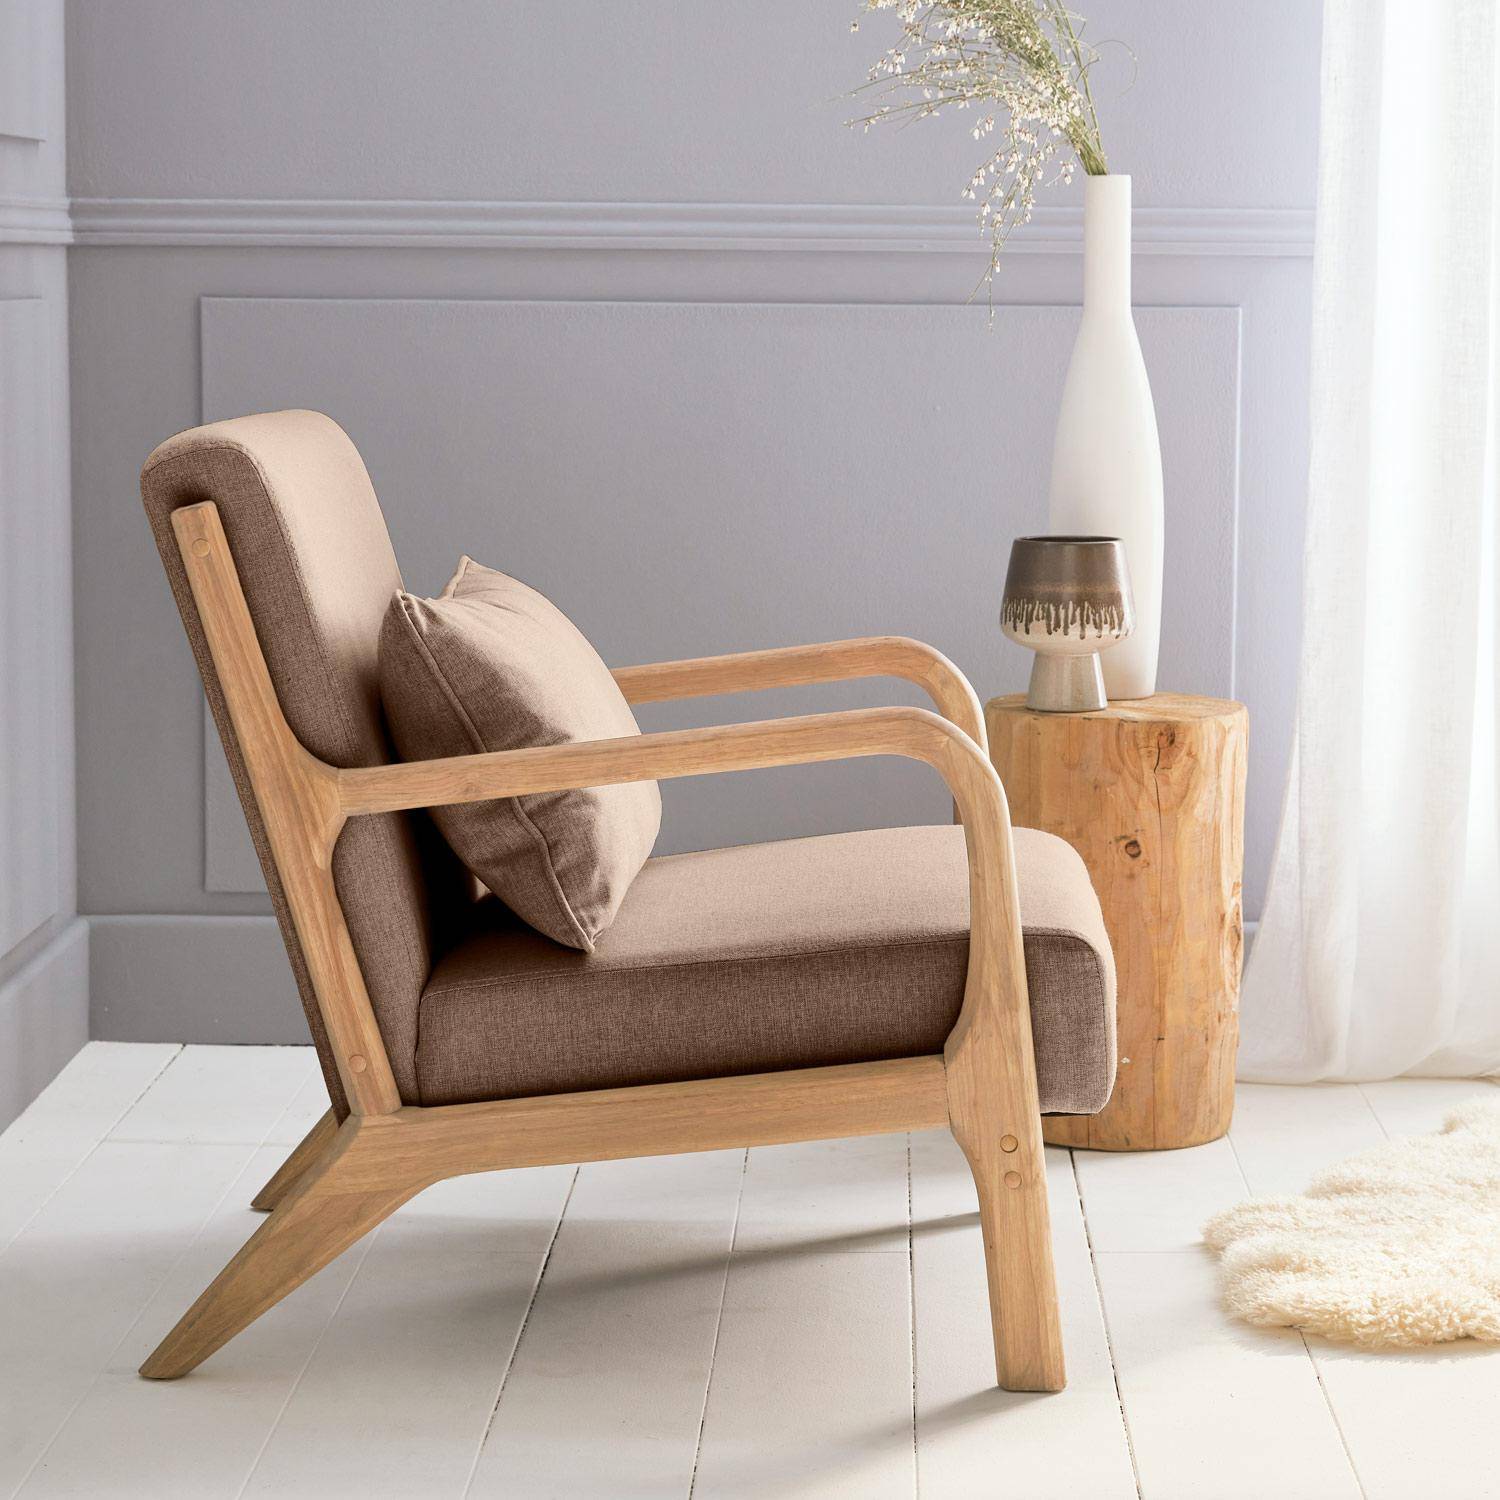 Sillón de diseño marrón en madera y tela, 1 asiento recto fijo, patas de compás escandinavas, armazón de madera maciza, asiento cómodo Photo3